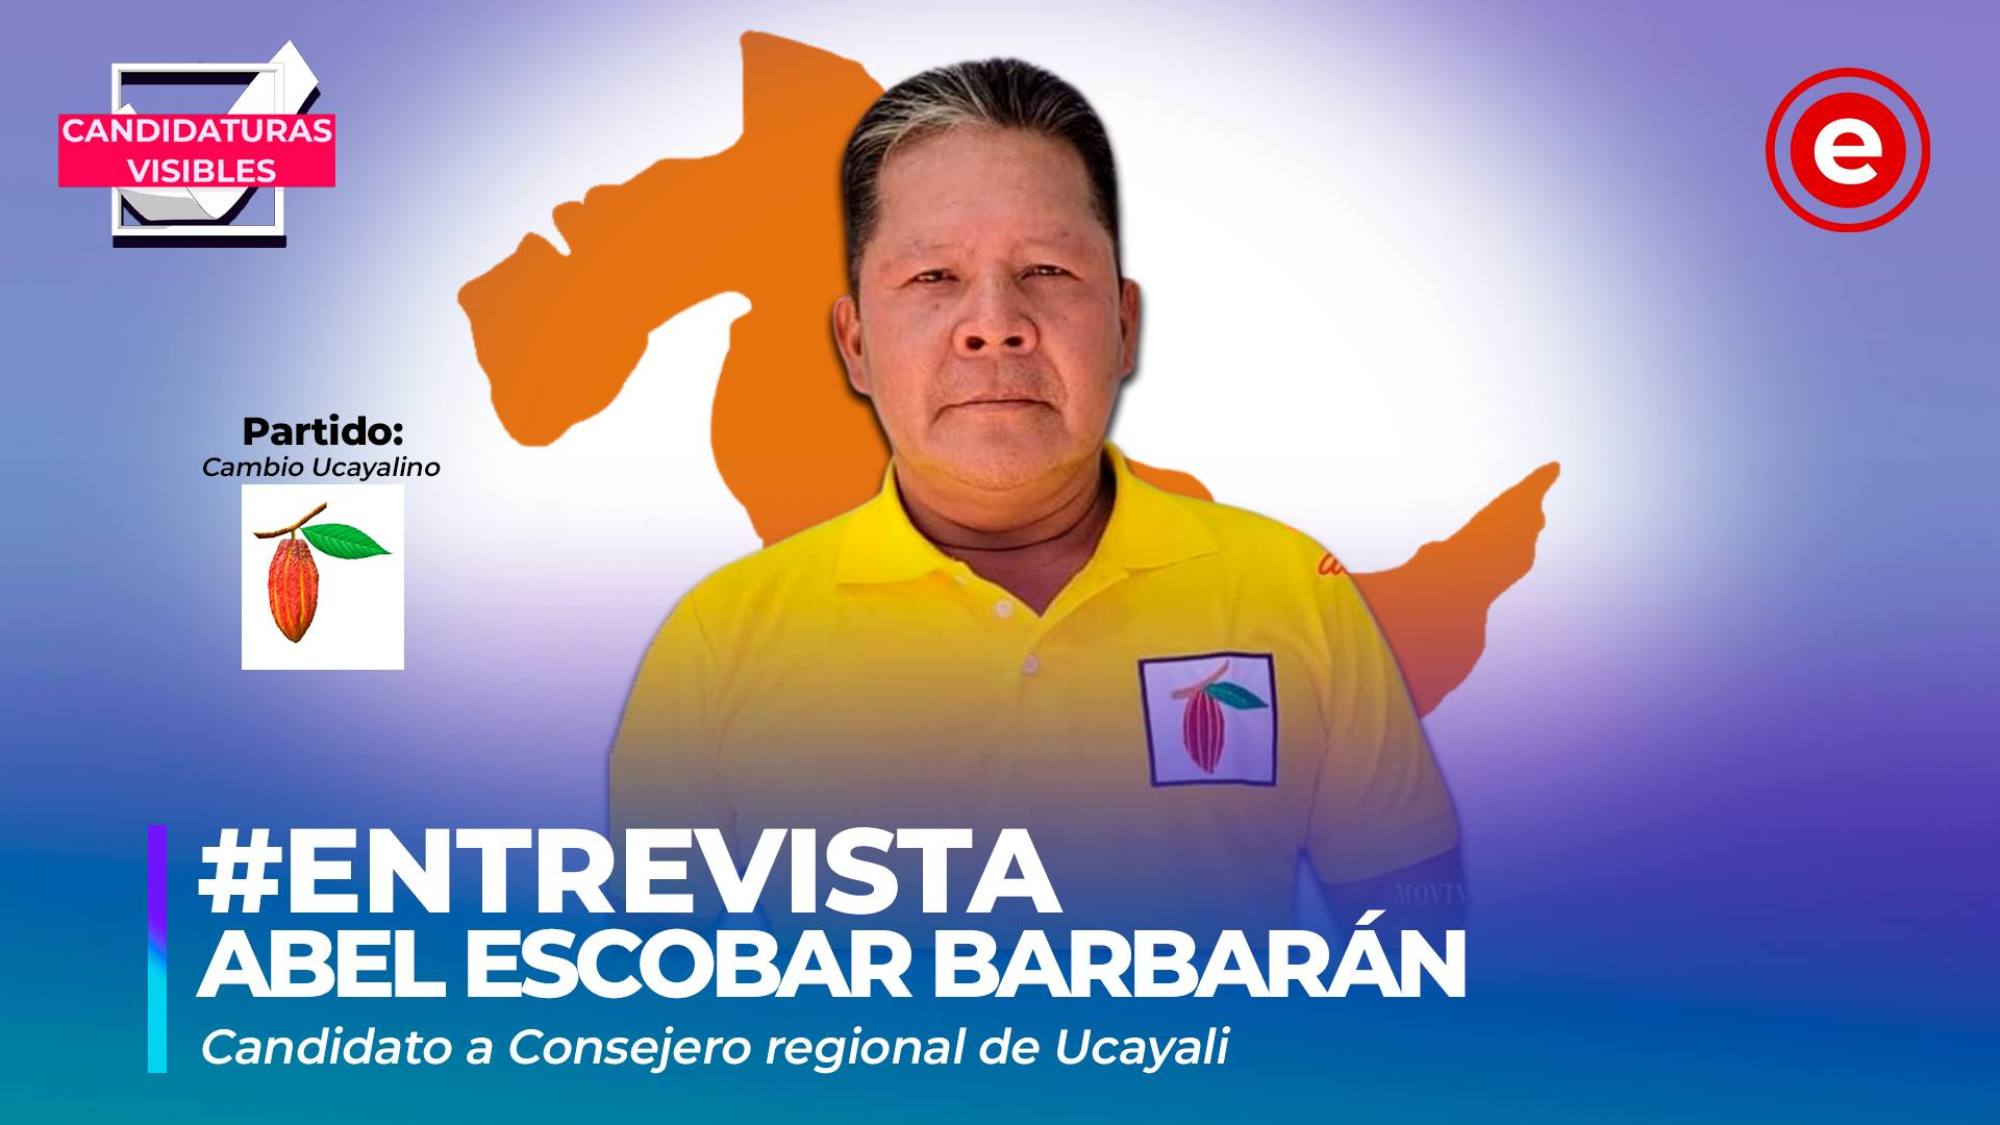 Candidaturas Visibles | Abel Escobar, candidato a consejero regional de Ucayali por Cambio Ucayalino, Epicentro TV